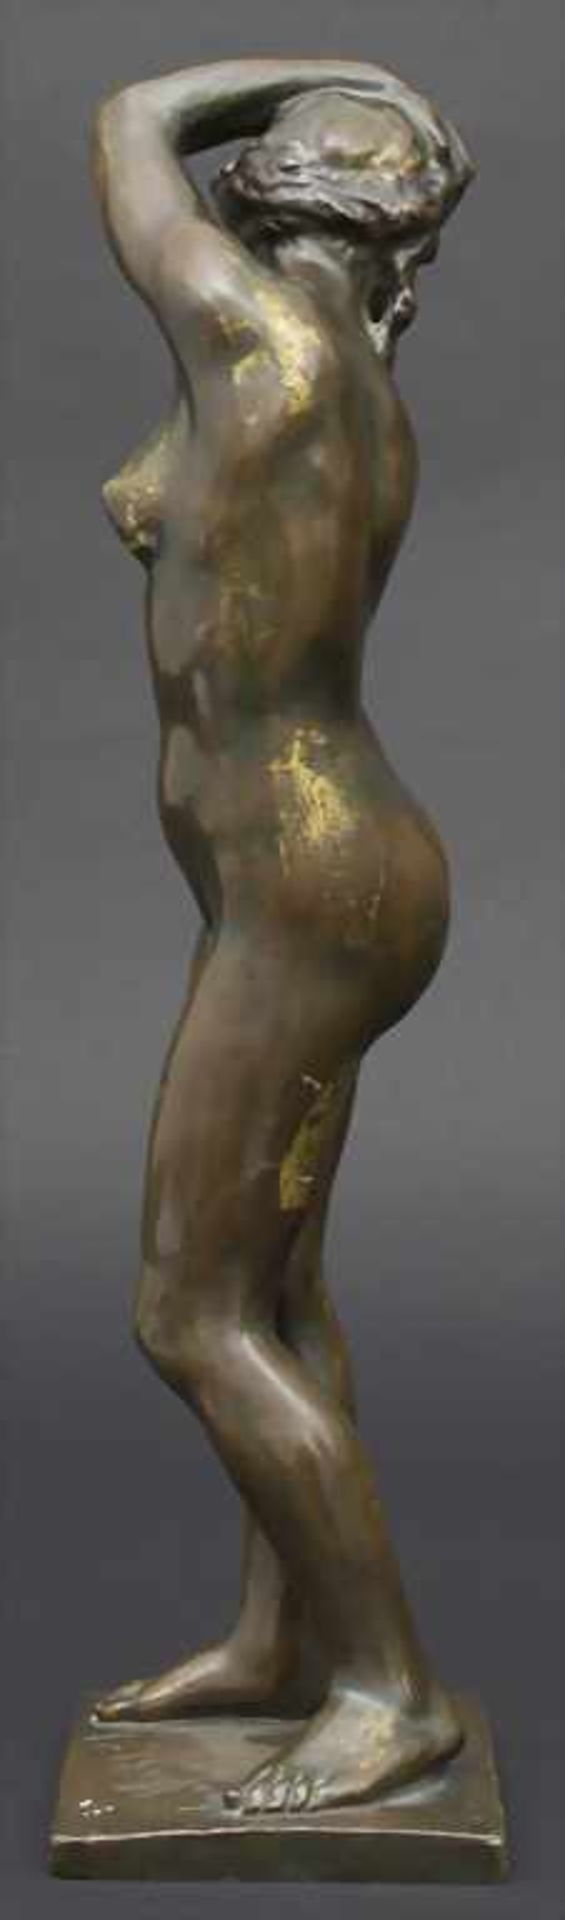 Frans Huygelen 1878-1940, Jugendstil Bronze, Weiblicher Akt / An Art Nouveau bronze sculpture of a - Image 2 of 6